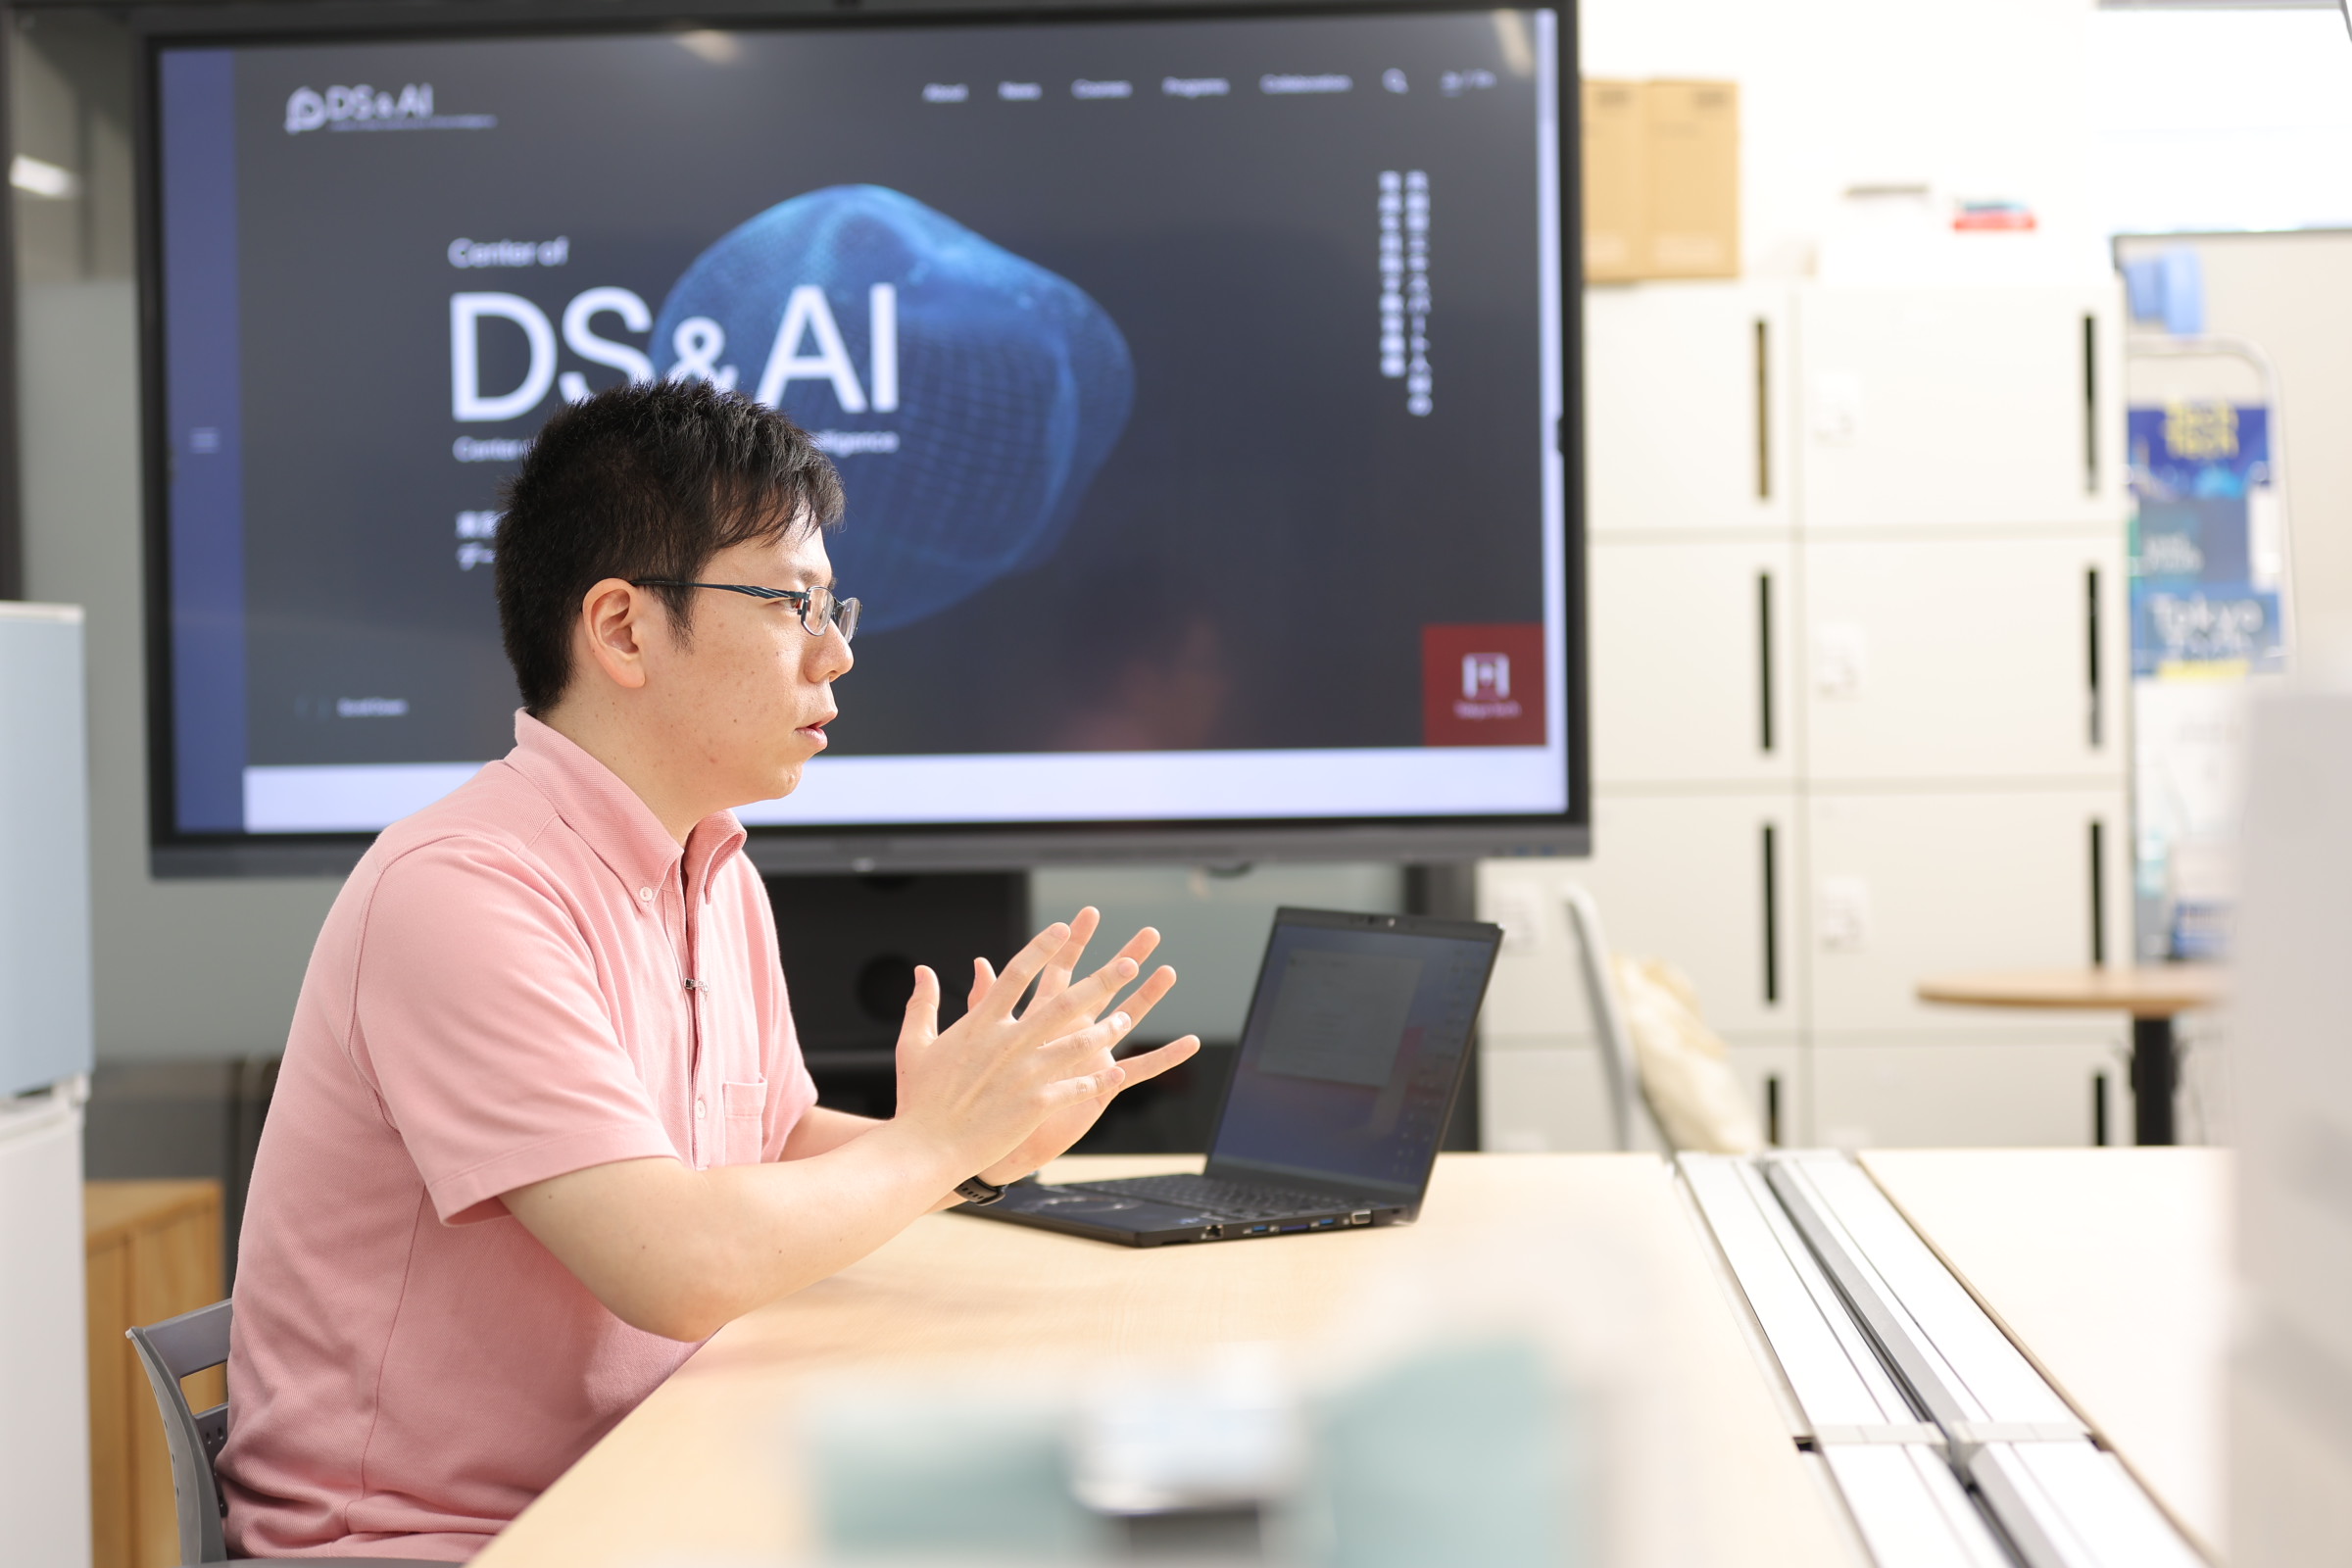 柳澤先生、いまさらですが、データサイエンス・AI全学教育機構って何？